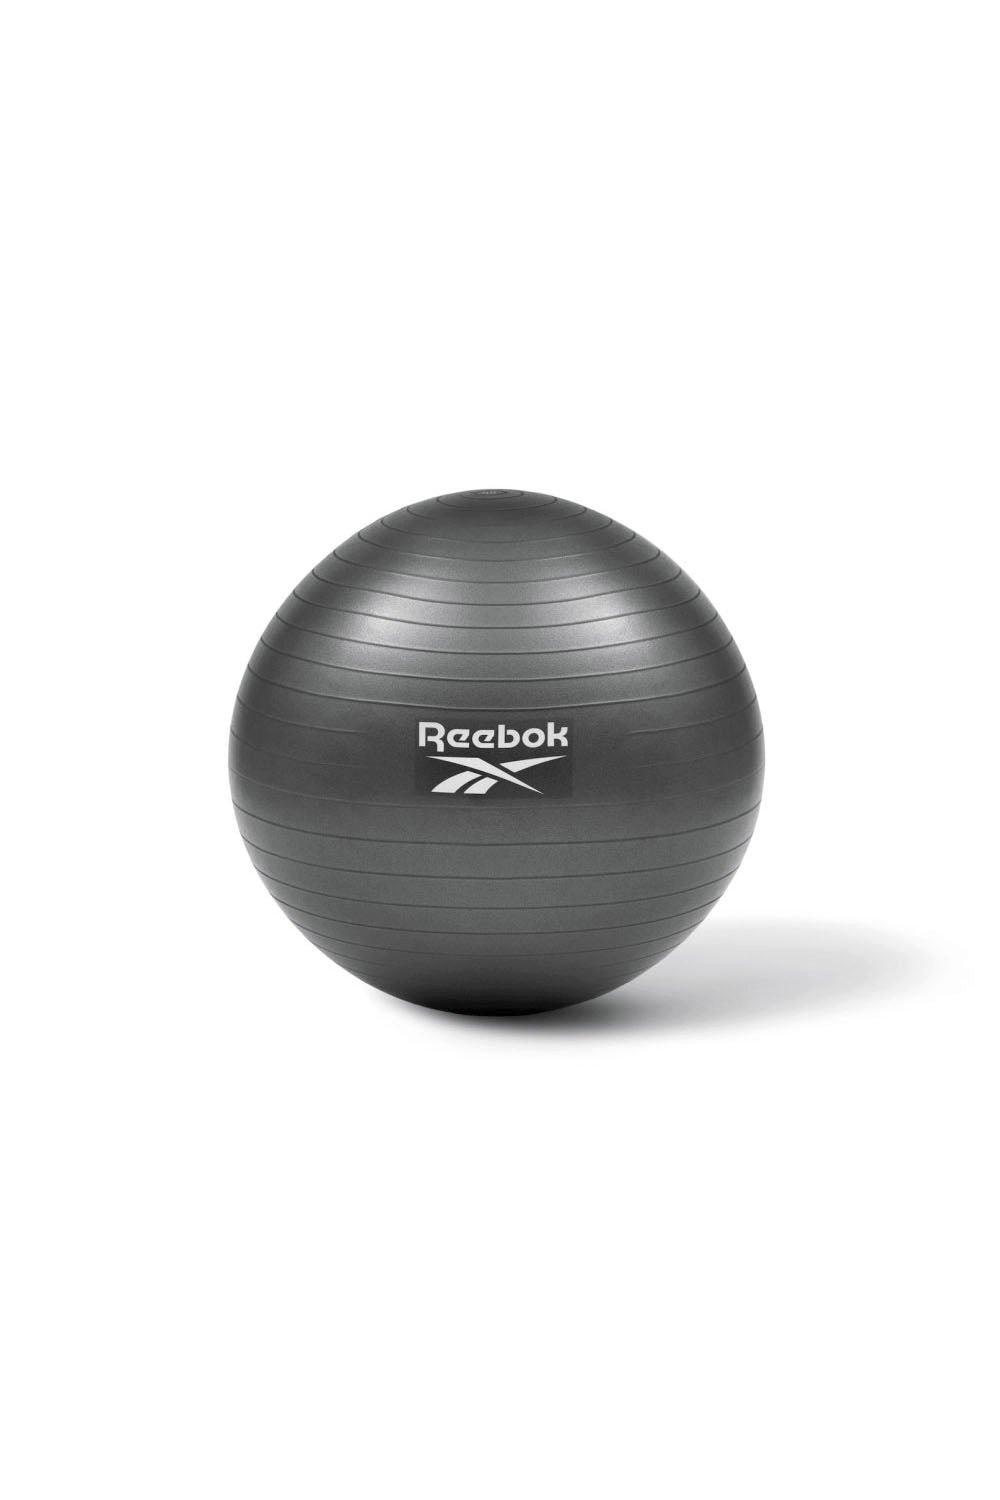 Reebok 65cm Gym Ball|dark grey